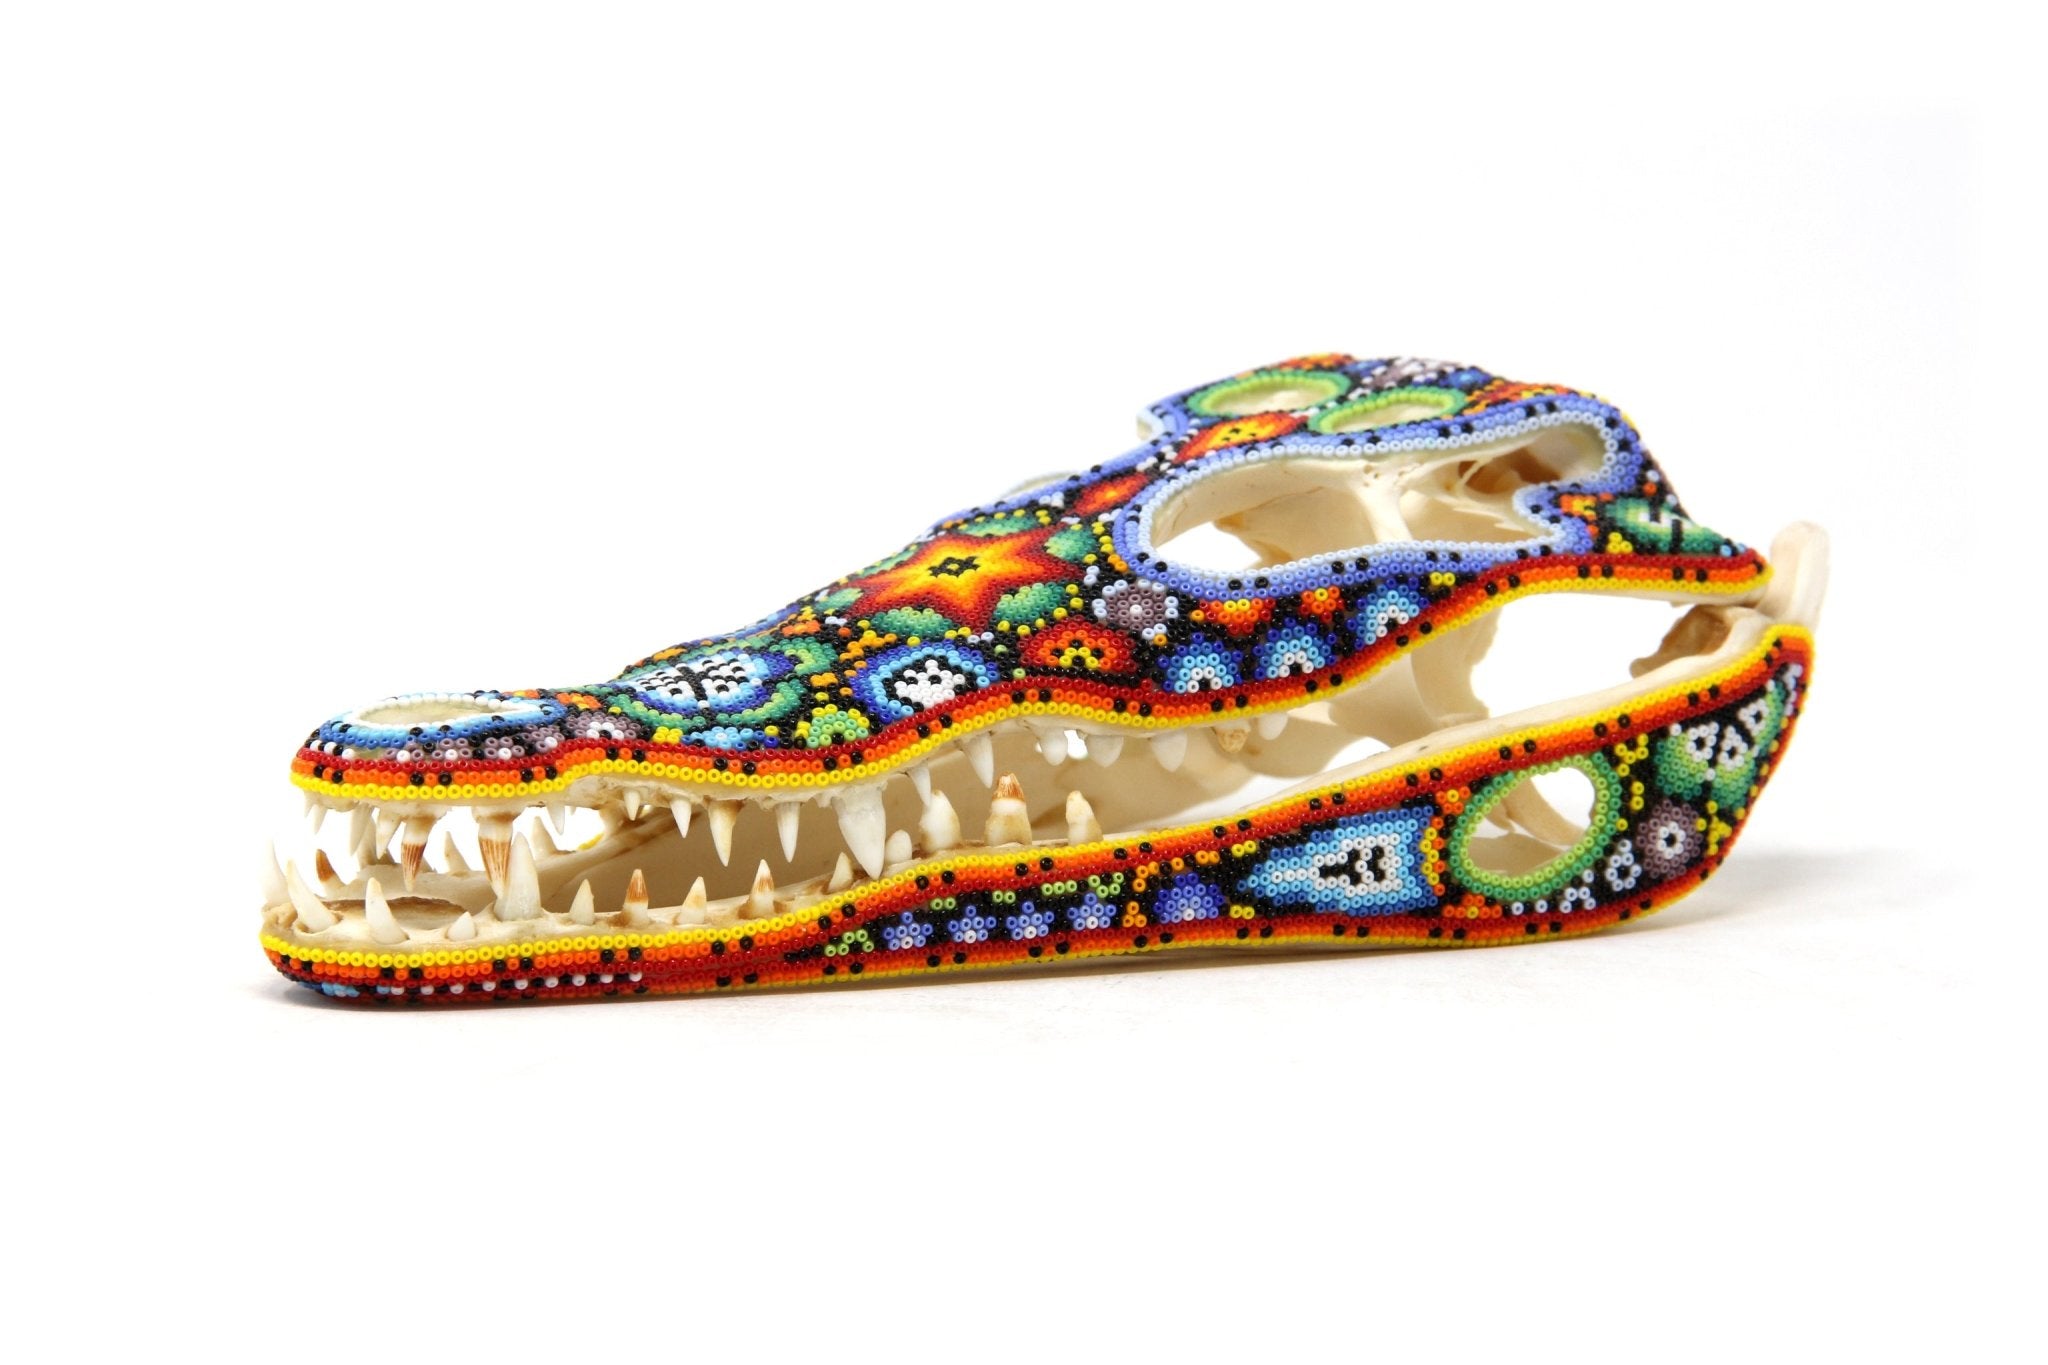 Crocodile Skull - Yutsi tutuya I - Huichol Art - Marakame